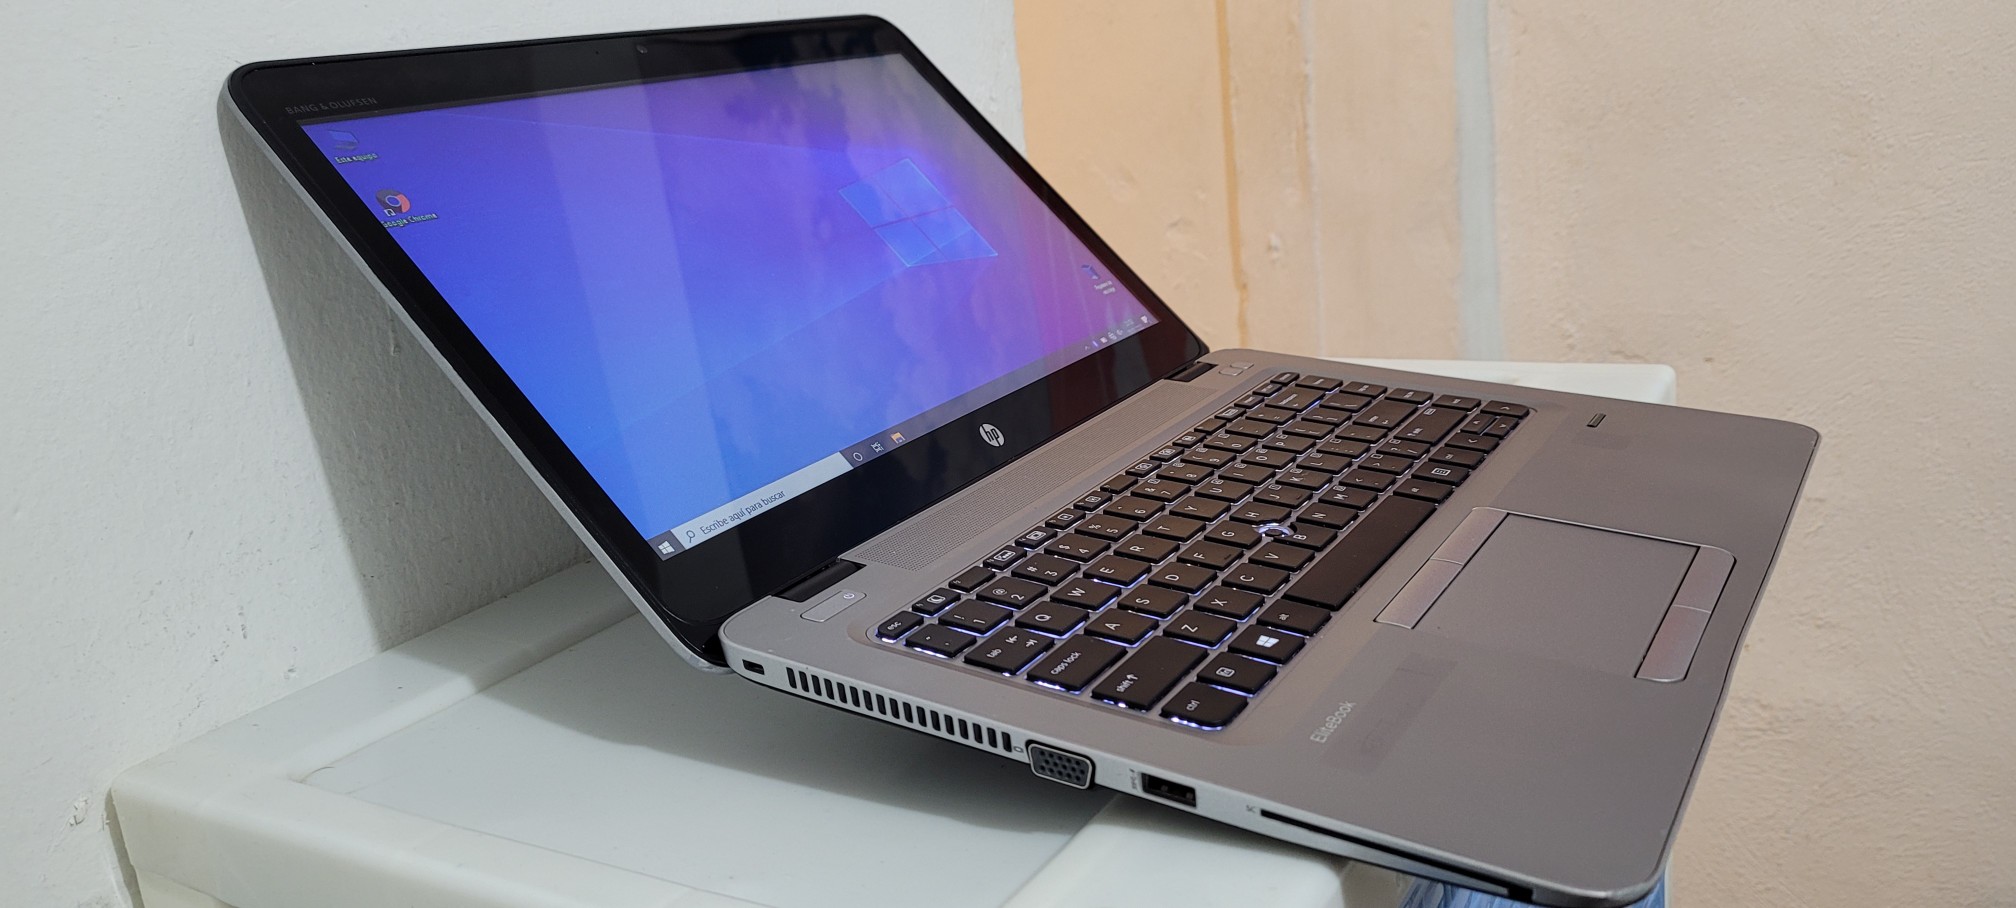 computadoras y laptops - Laptop Touch hp Core i5 7ma Gen Ram 8gb ddr4 Disco 128gb SSD Y 320gb Fulk 1